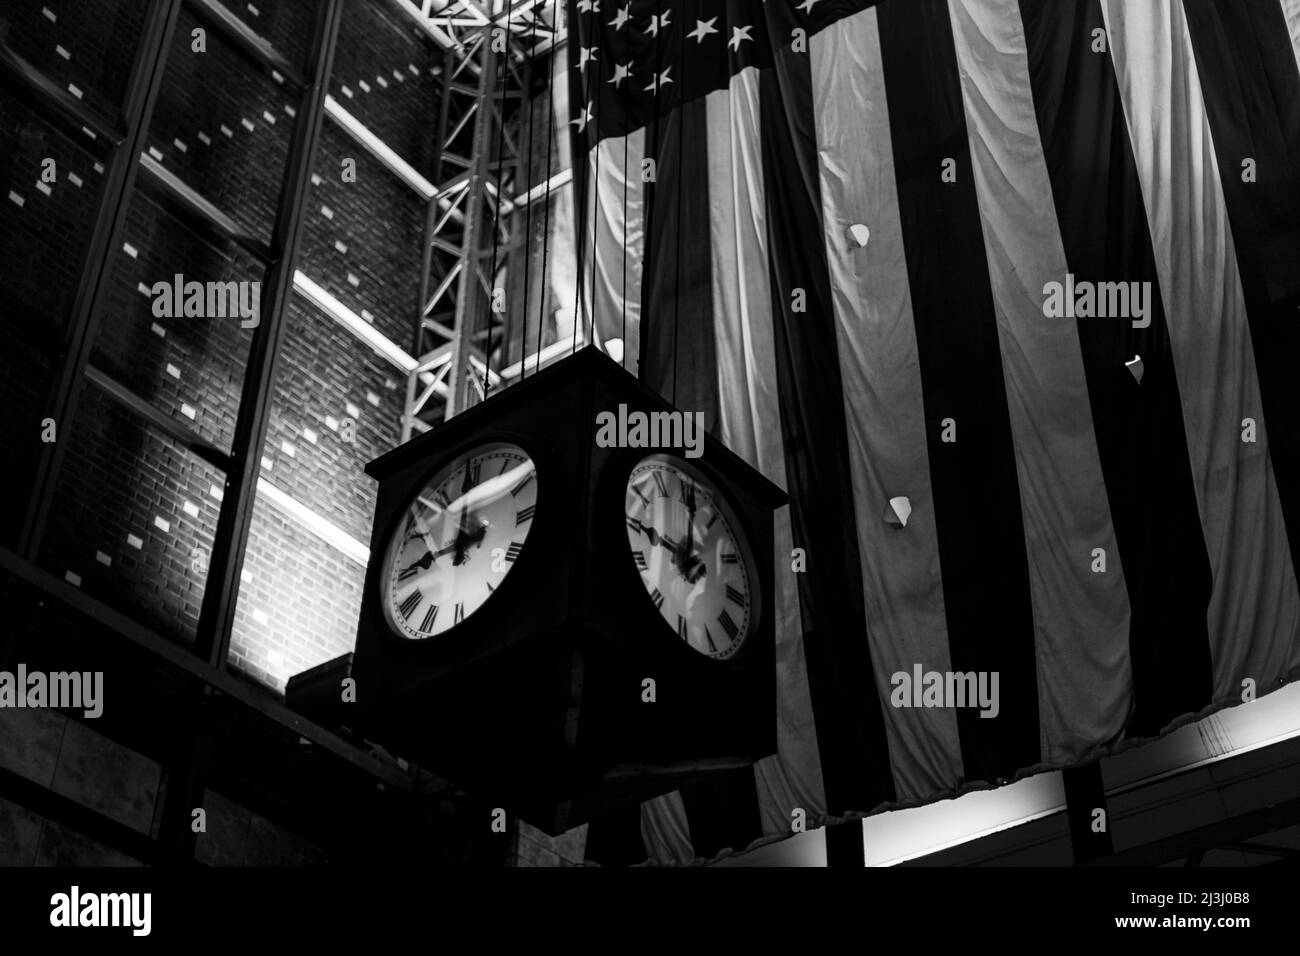 W 34 ST/7 AV, New York City, NY, USA, the american flag behind a clock Stock Photo